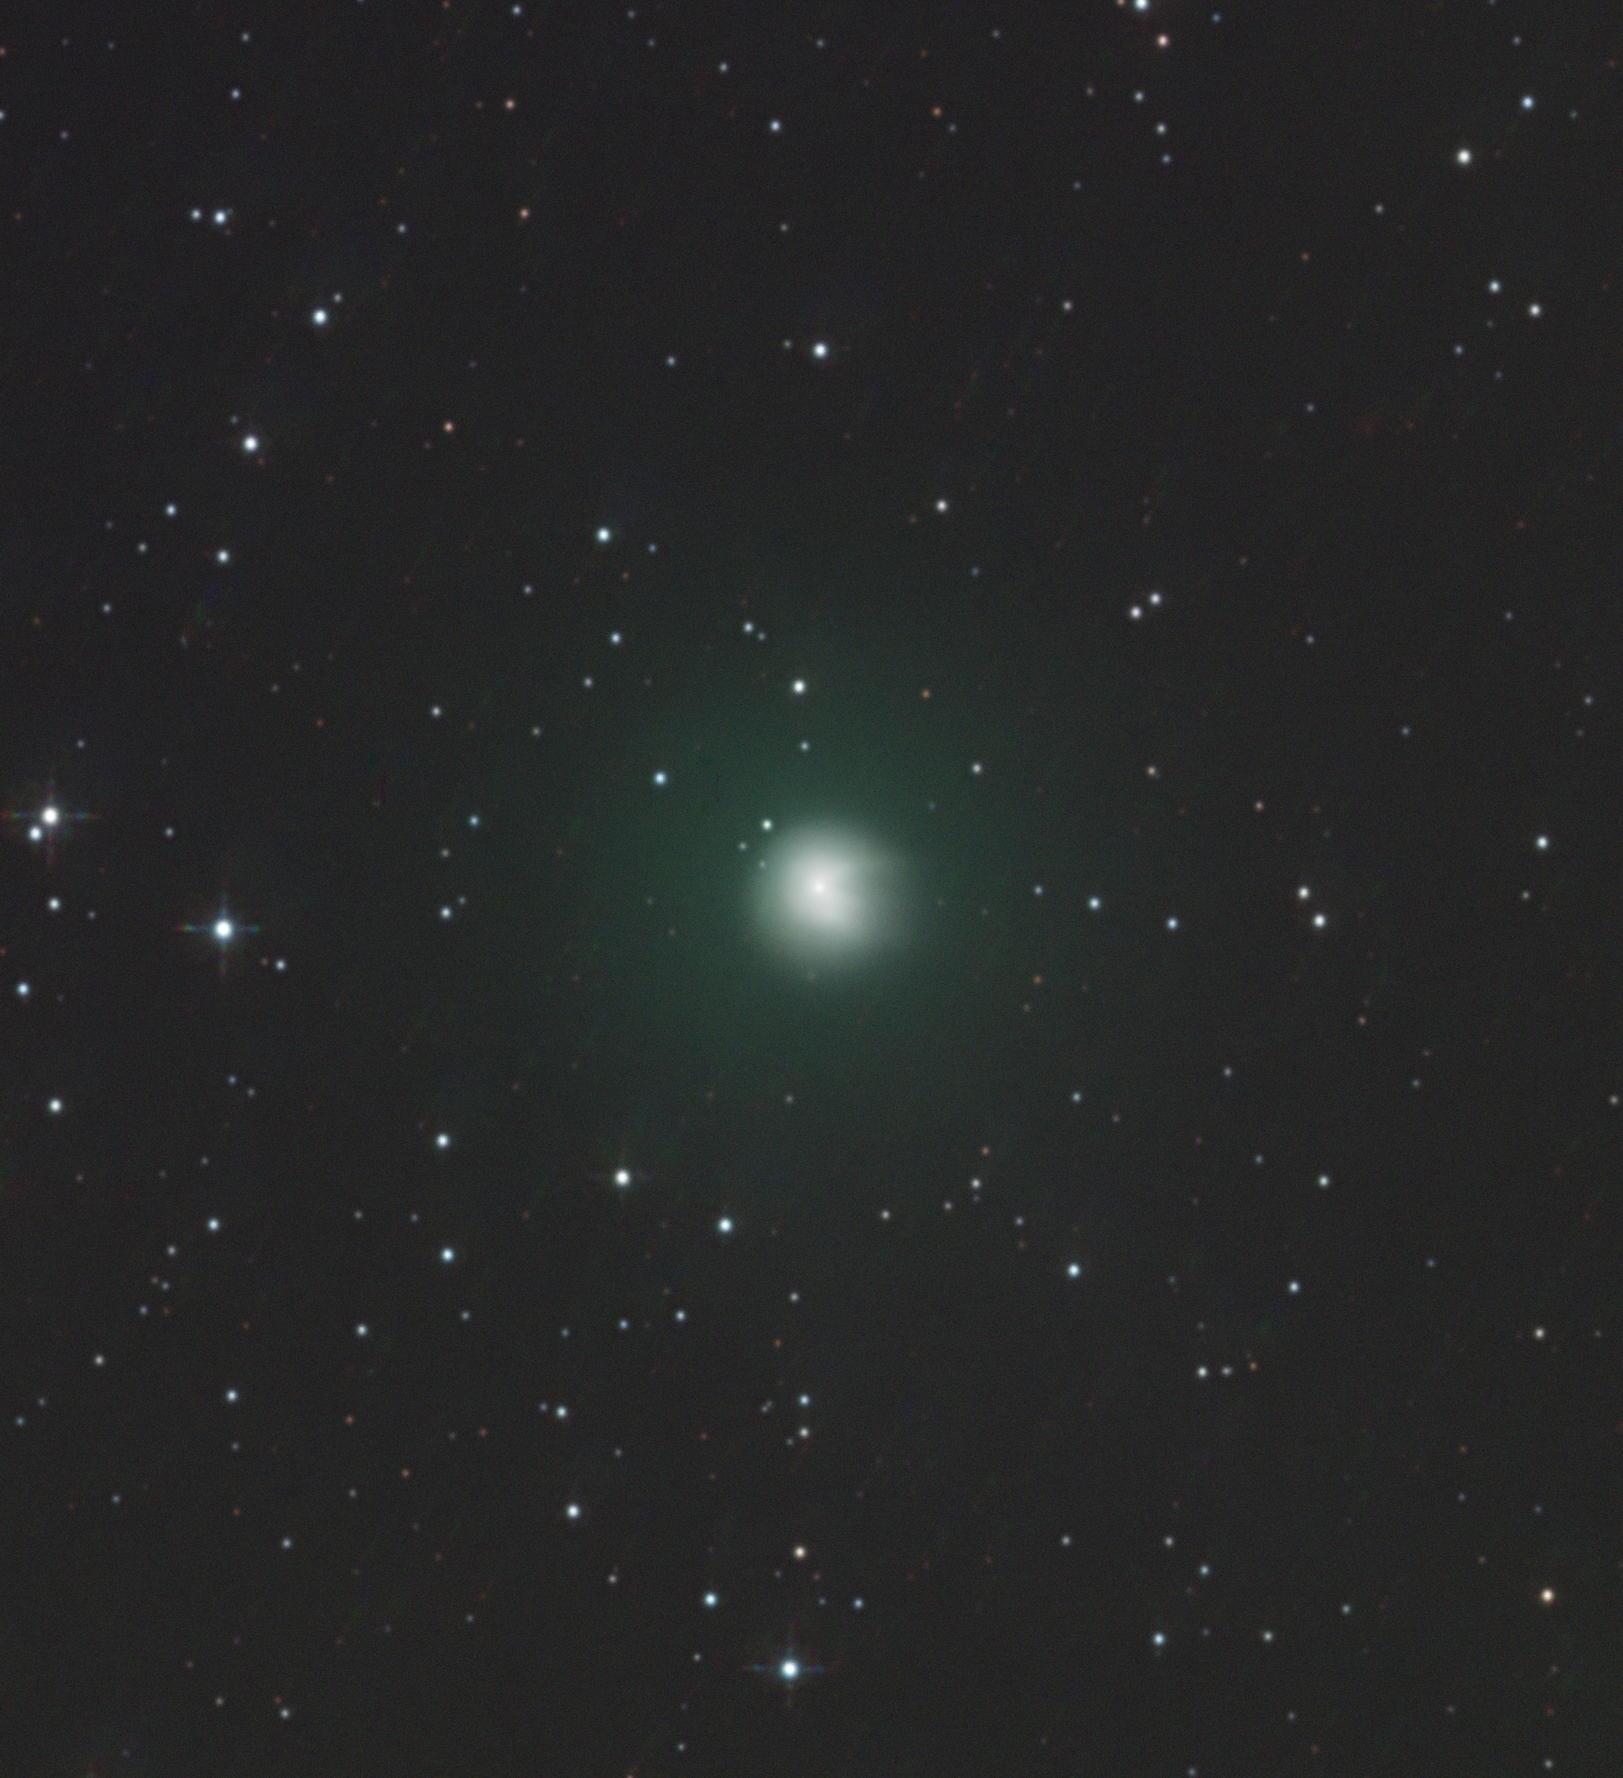 Комета понса брукса где наблюдать в москве